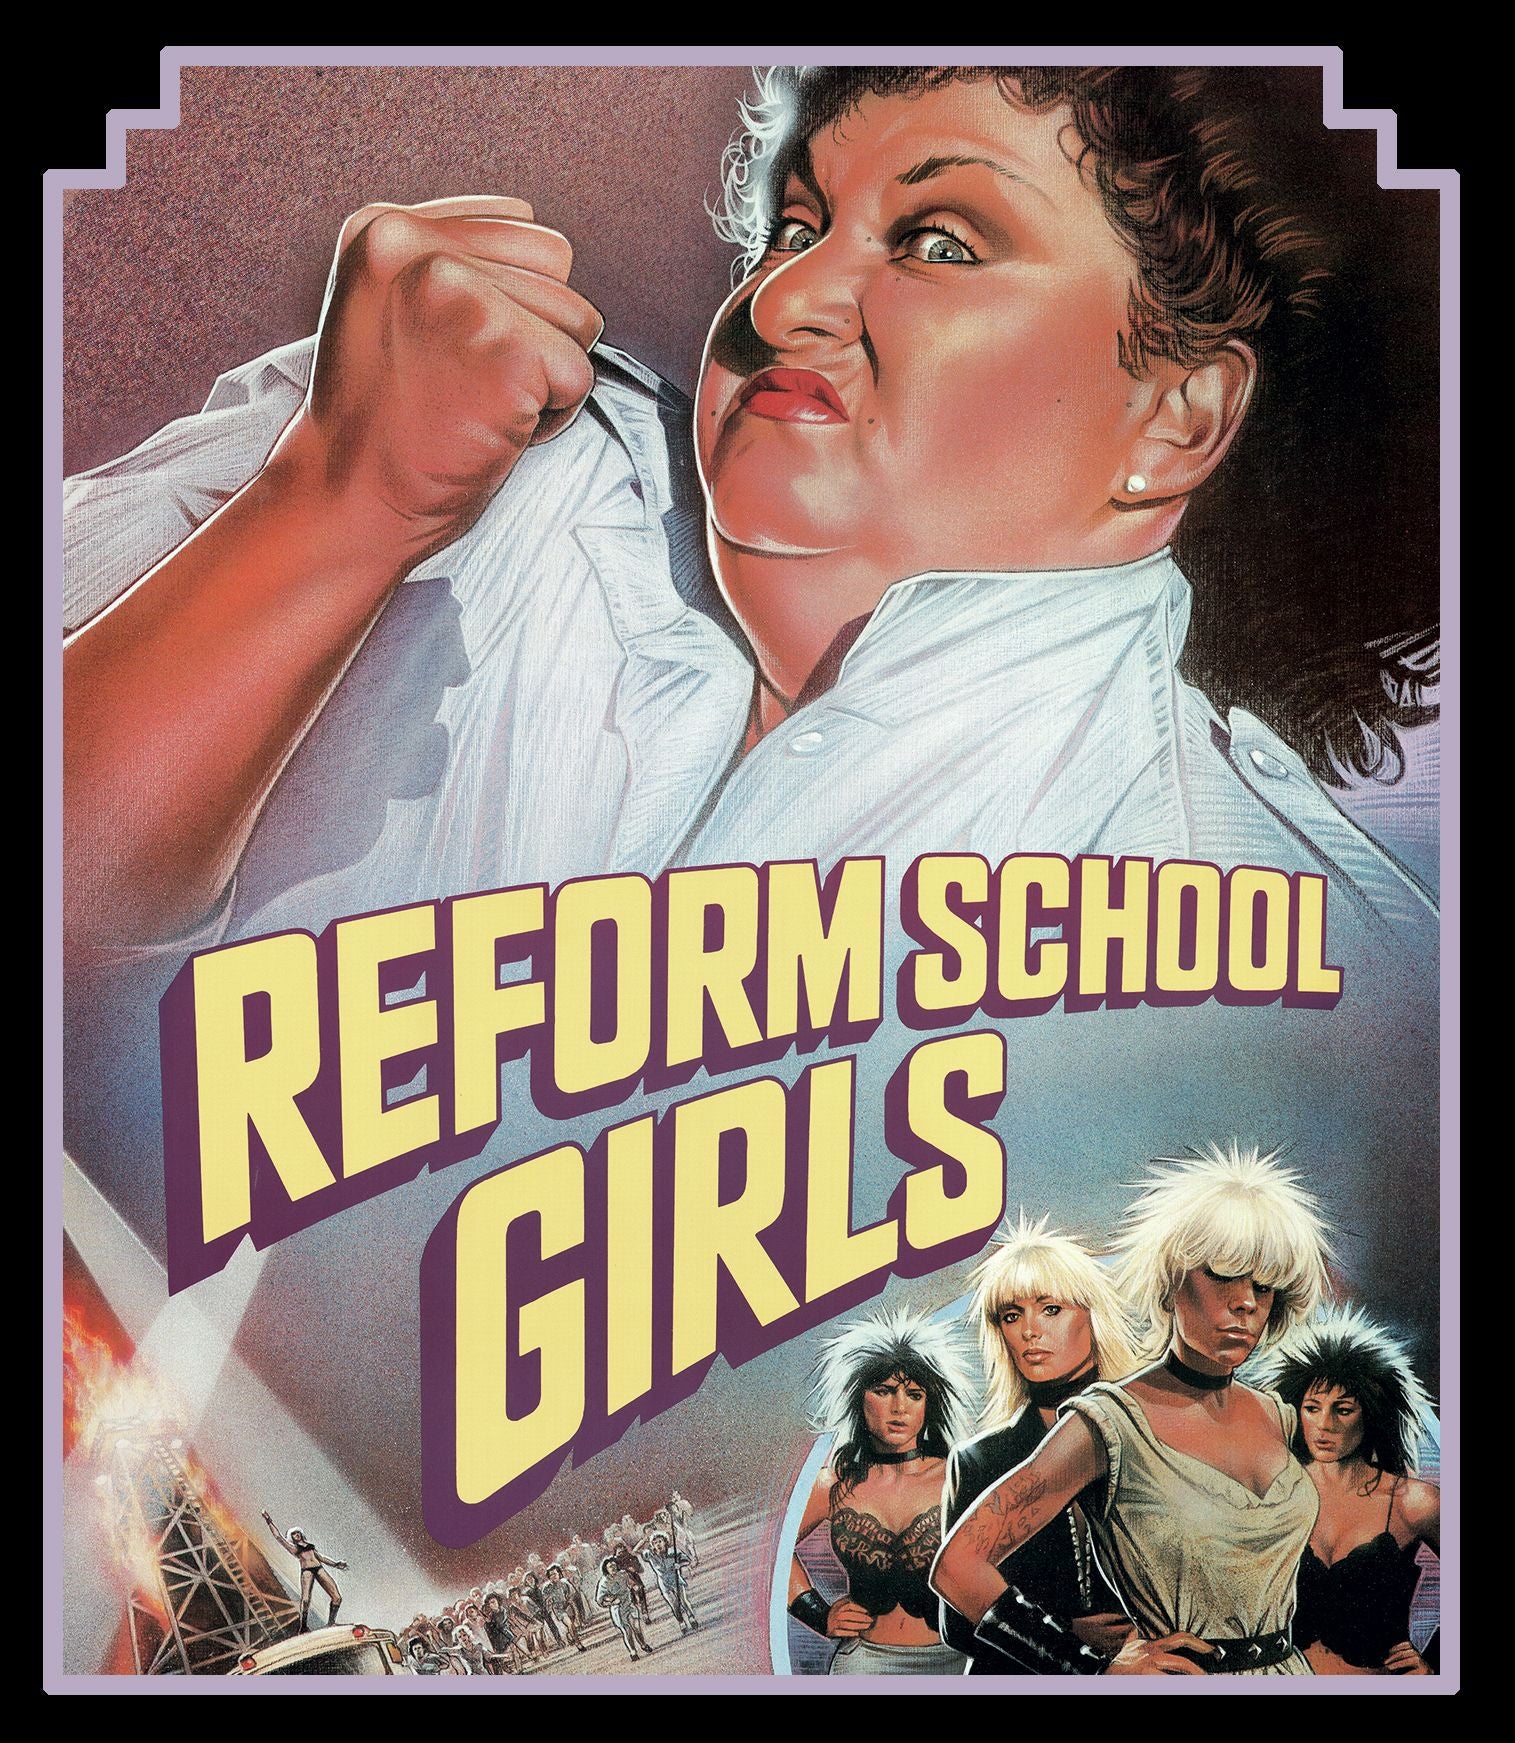 REFORM SCHOOL GIRLS BLU-RAY